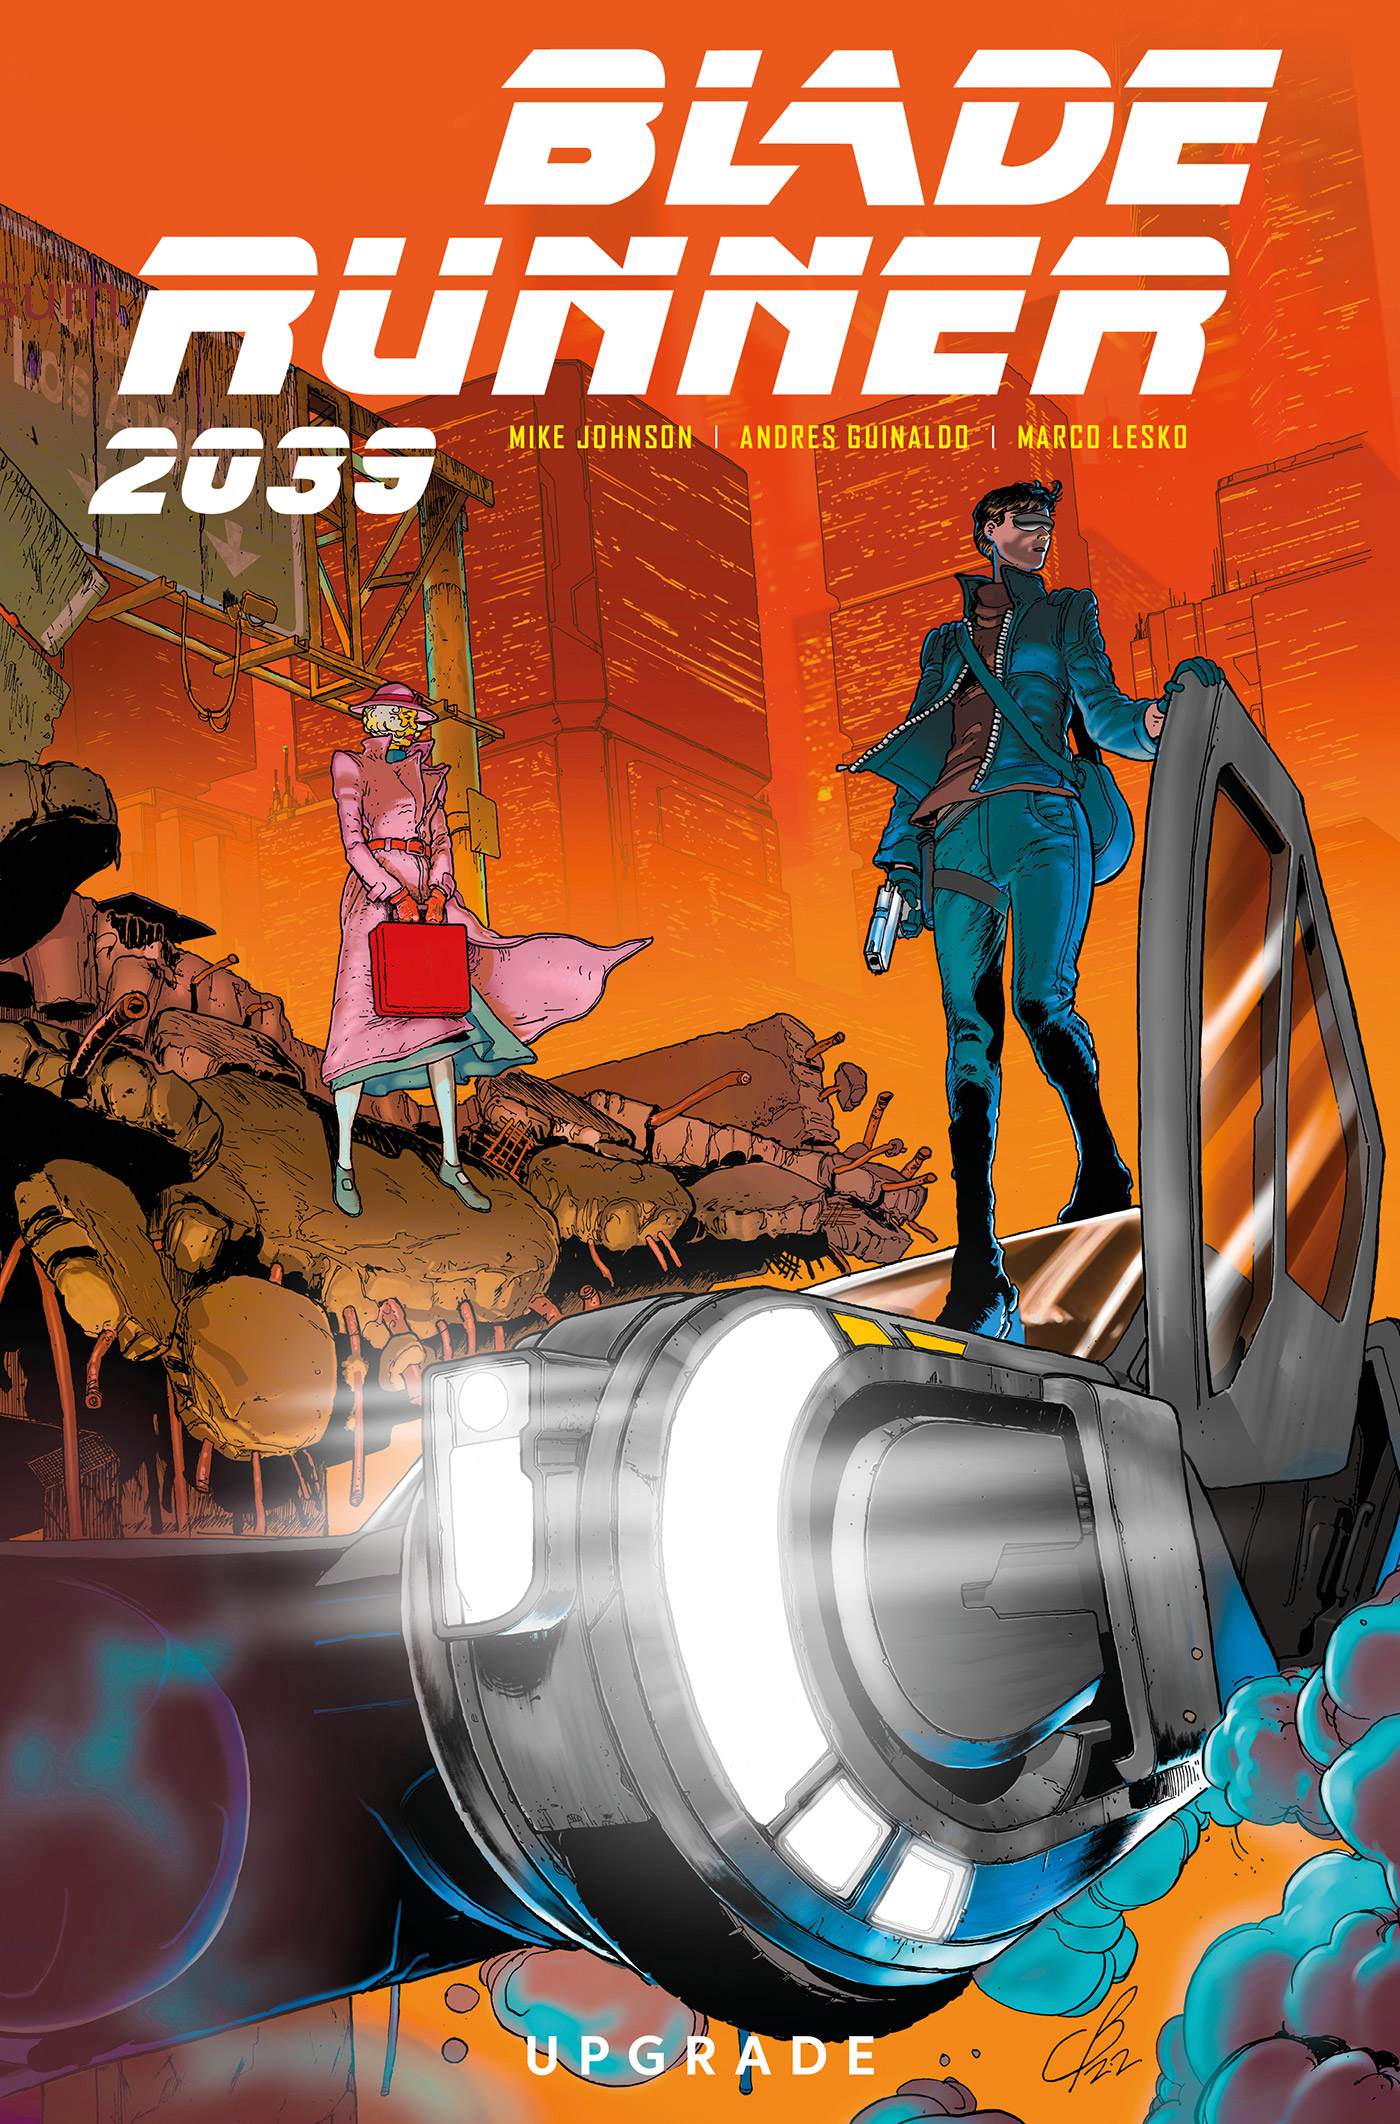 Blade Runner 2039 Graphic Novel Volume 2 Upgrade